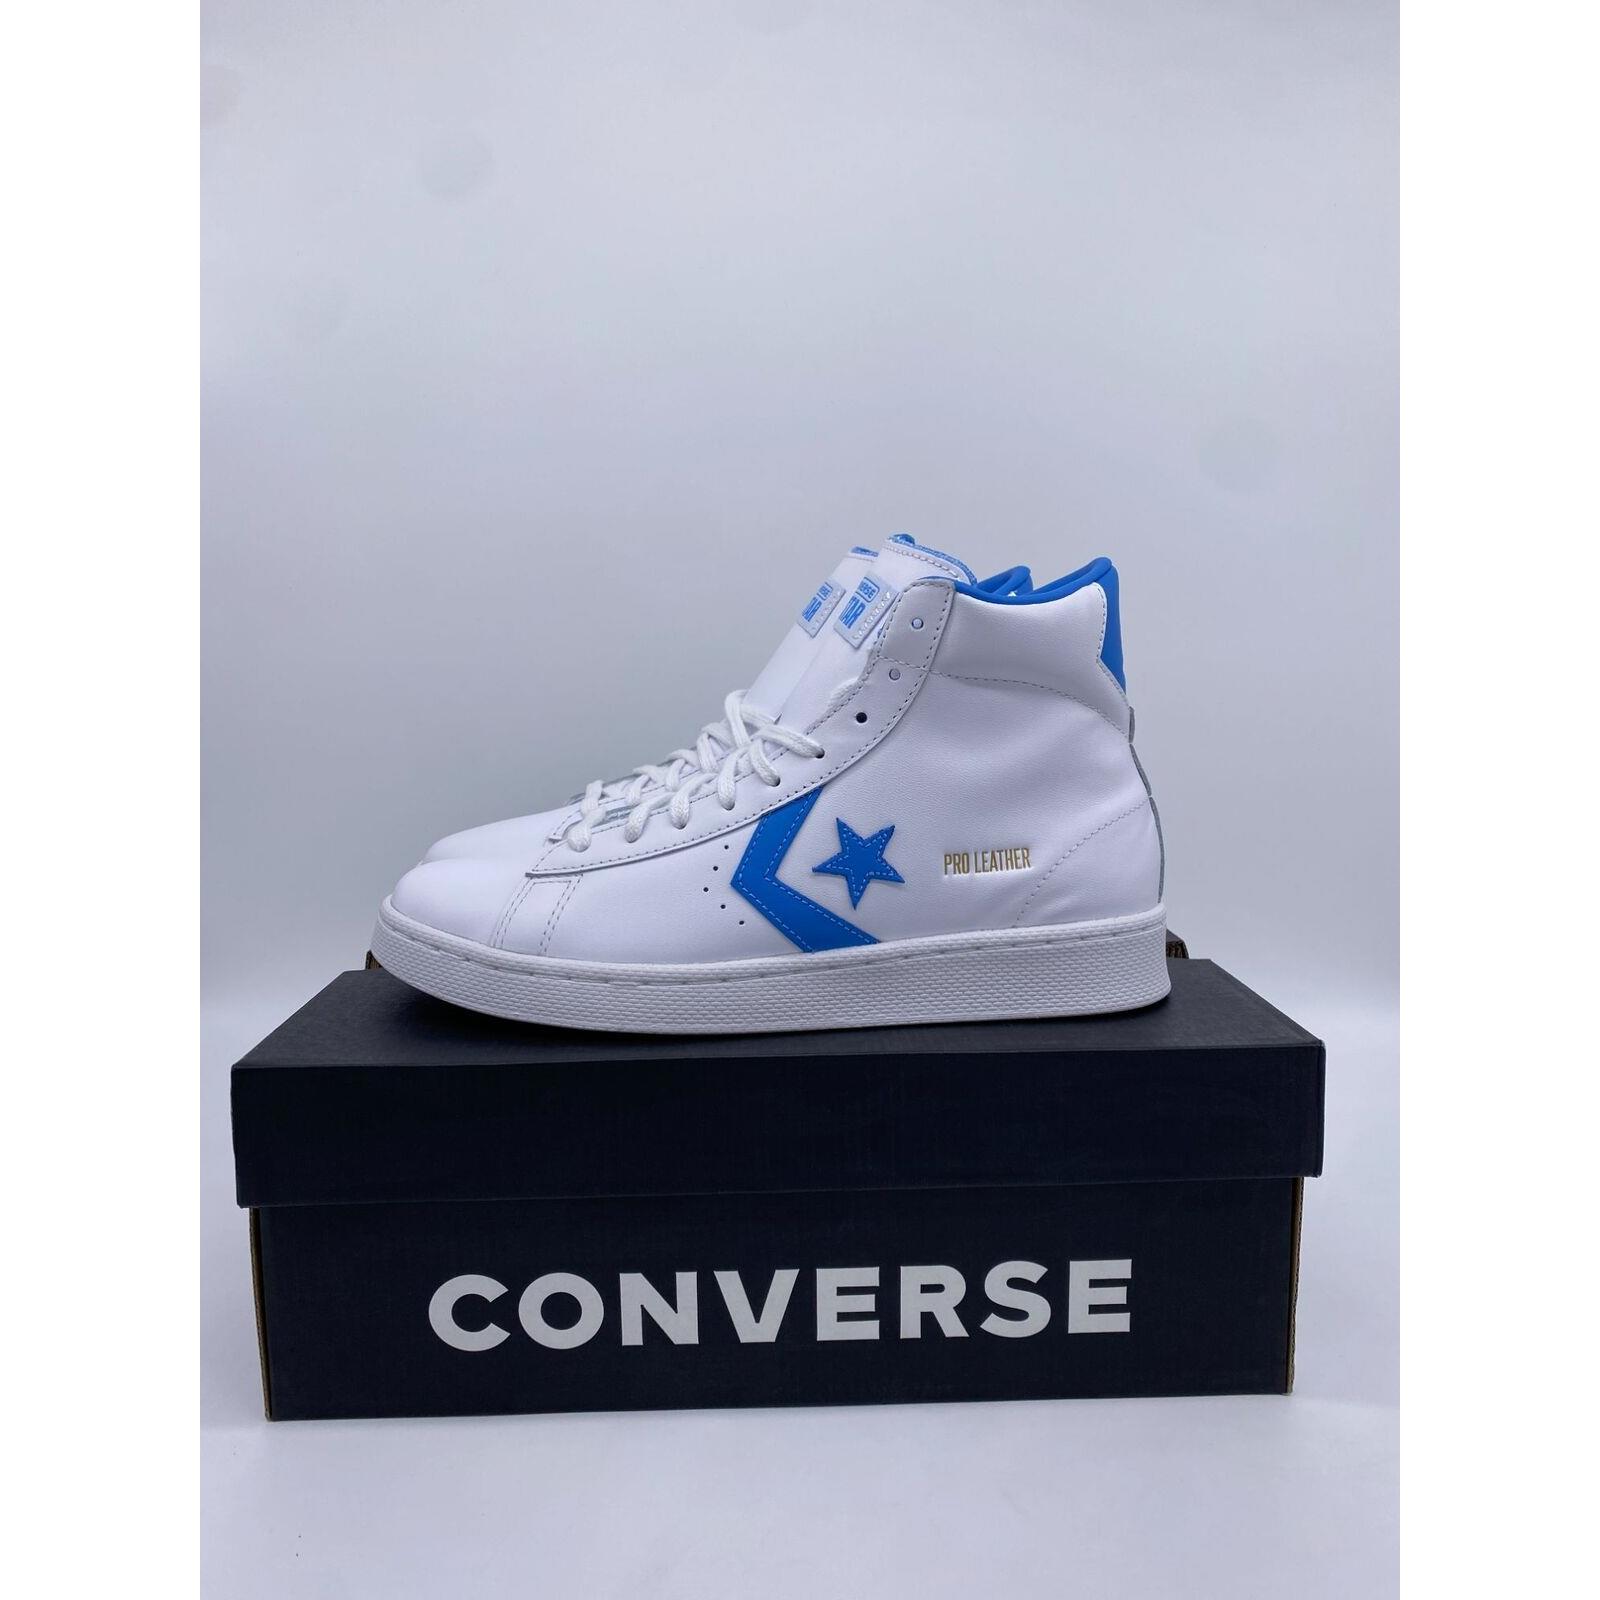 Converse Unisex Unc White Leather Hi Top Sneakers Shoes Sz M 8 W 9.5 166813C